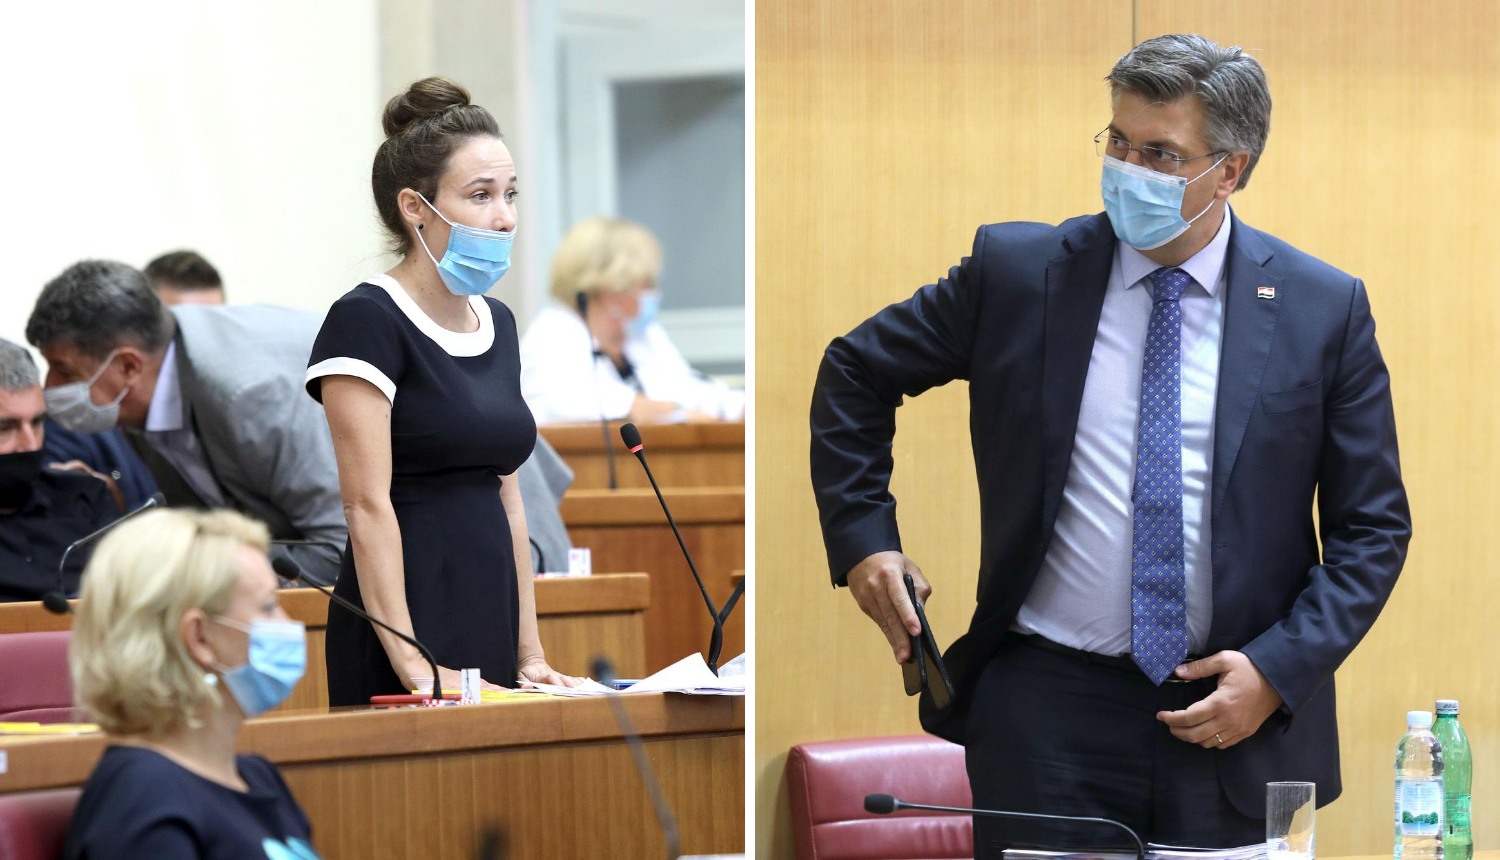 Zaiskrilo u Saboru: Orešković kaže da je zakon laž, Plenković joj odgovorio da je bezobrazna